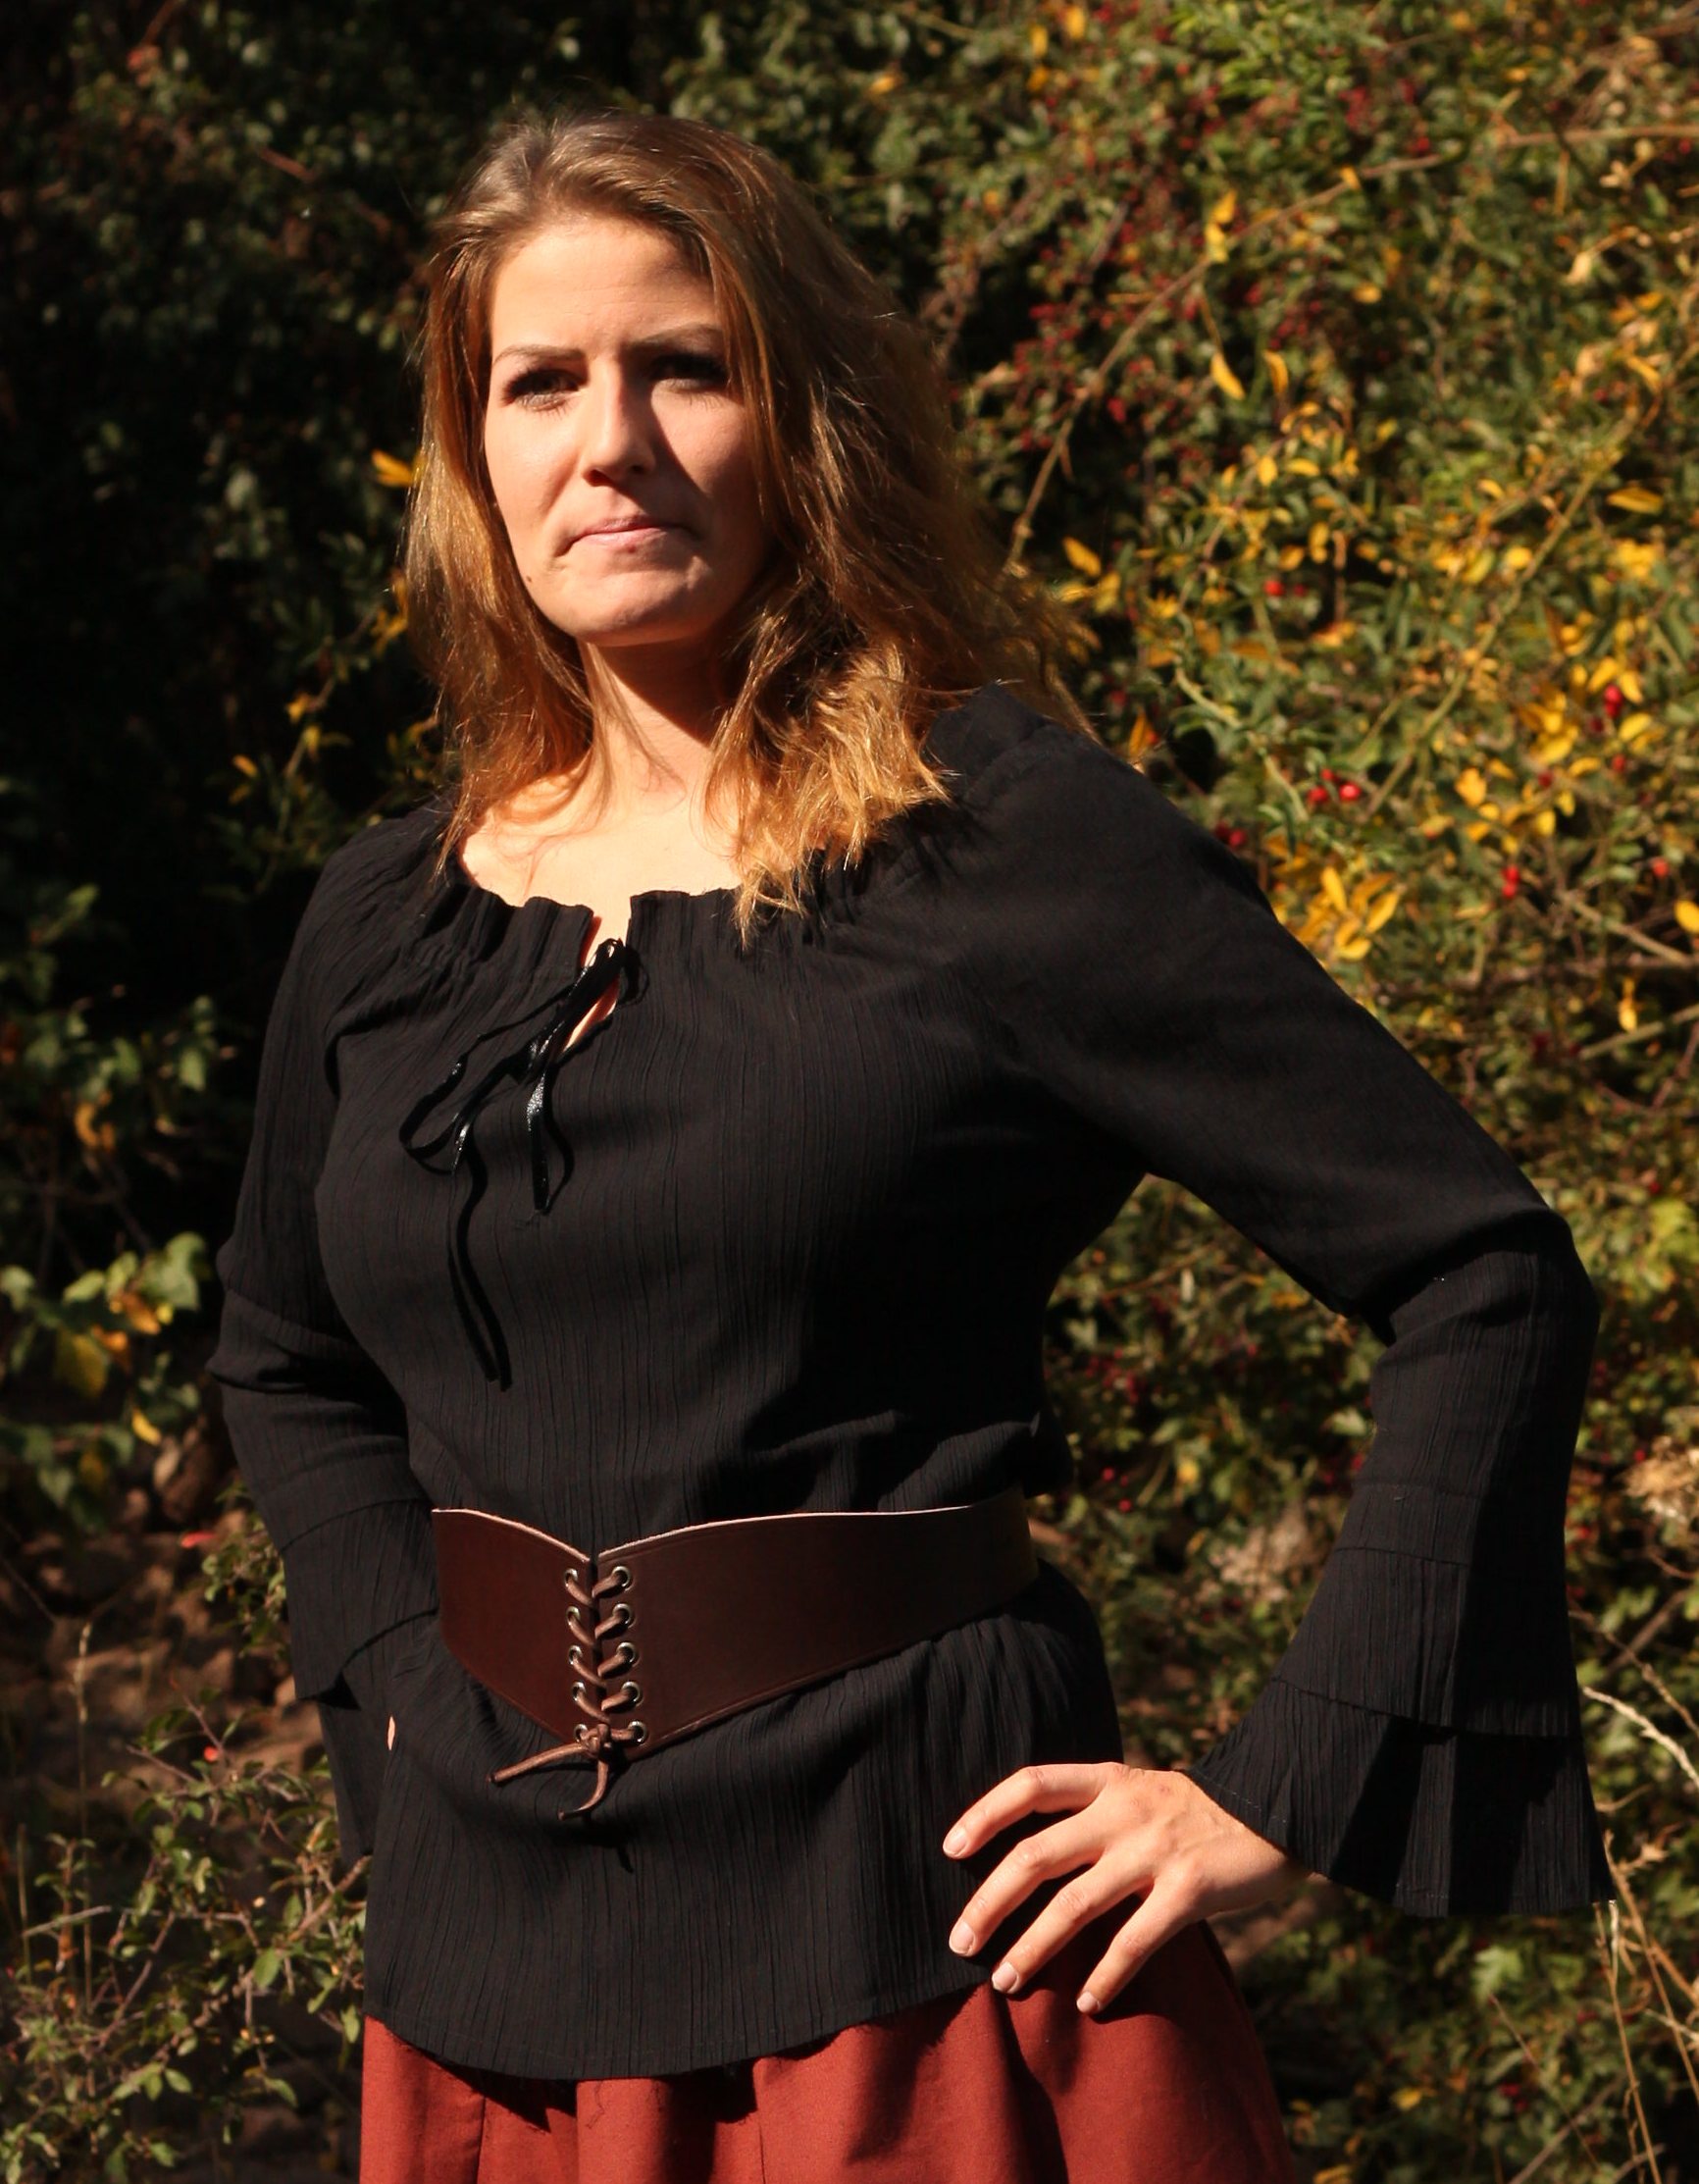 Mittelalter Bluse in schwarz, rot, grün oder braun kaufen für Mittelalter LARP